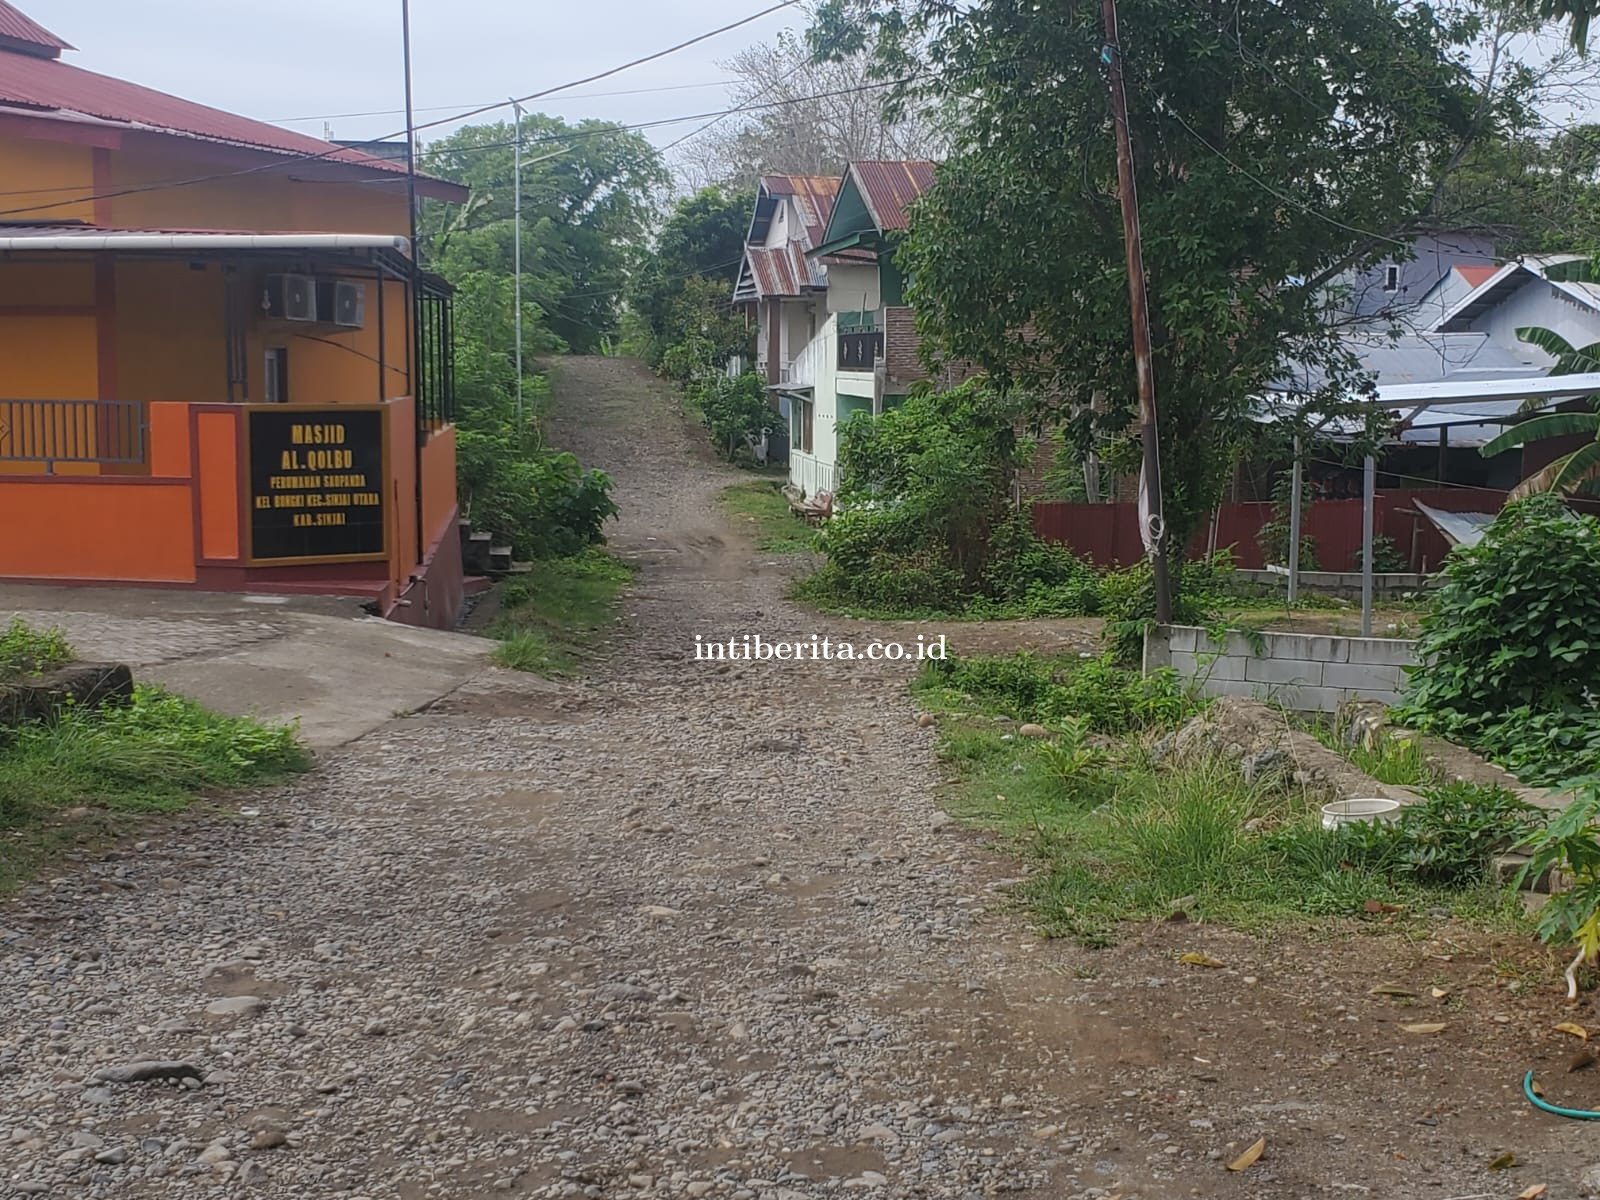 Warga Desak Pj Bupati Sinjai Realisasikan Pengaspalan Jl Saopanda